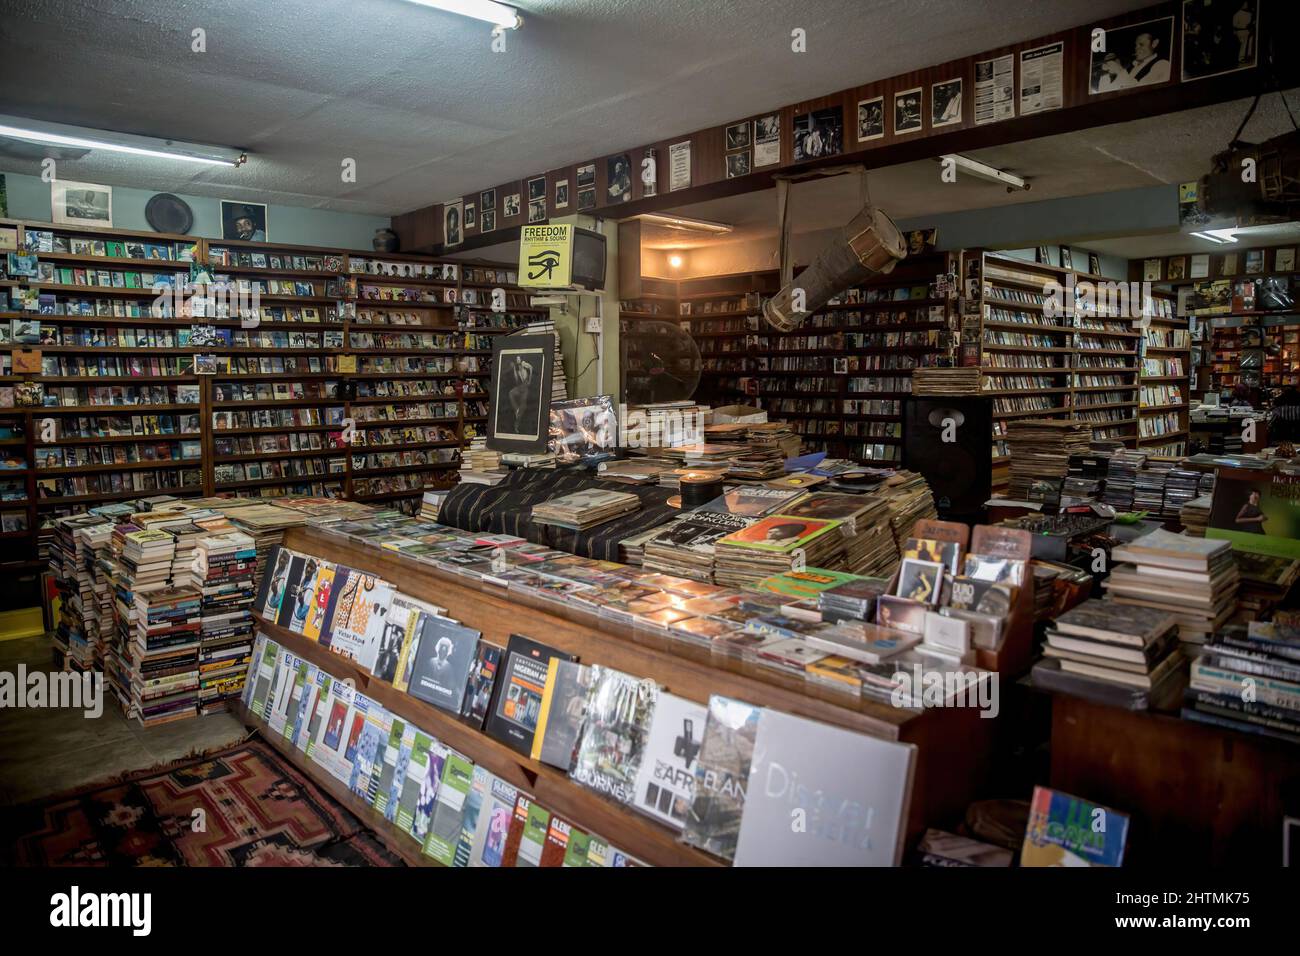 Lagos, Nigéria. 21st novembre 2021. L'intérieur du Jazzhole, un légendaire magasin de livres et de disques de Lagos vu comme des auteurs nigérians, connaît actuellement un succès mondial important. (Image de crédit : © Sally Hayden/SOPA Images via ZUMA Press Wire) Banque D'Images